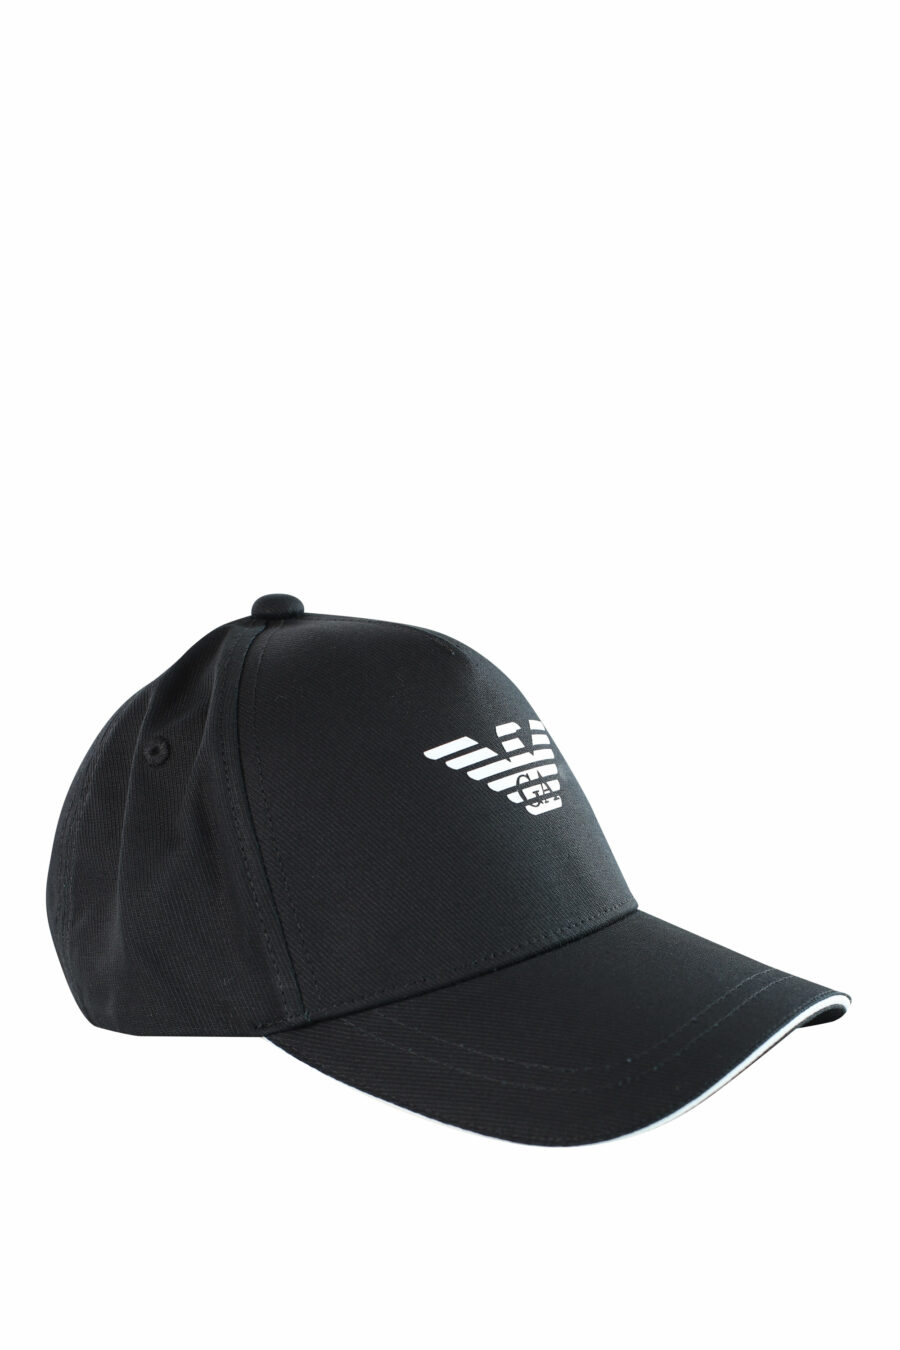 Gorra negra con logo águila blanco - IMG 3718